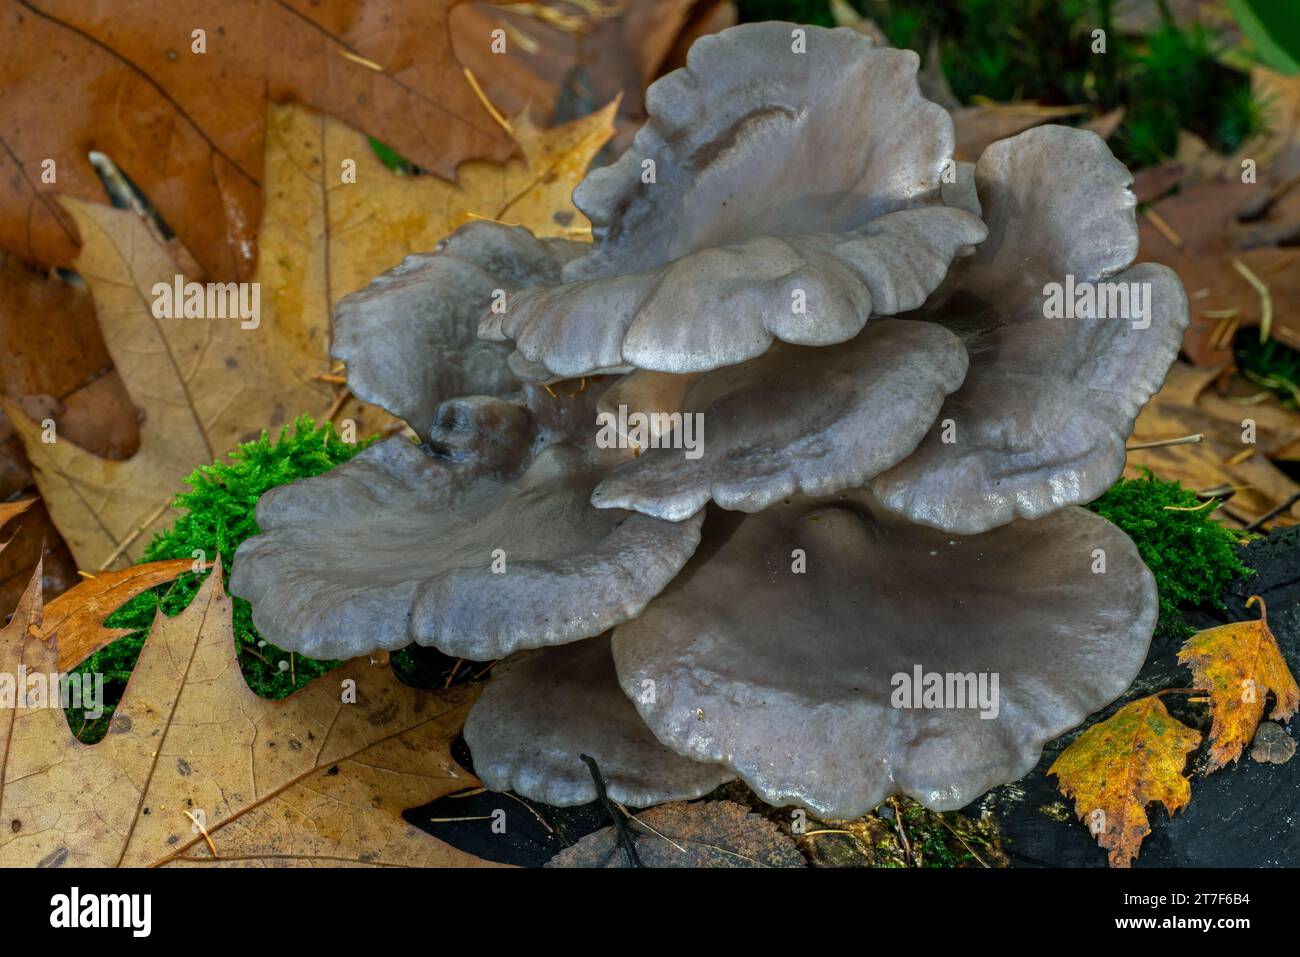 Champignon d'huître / champignon d'huître, hiratake / champignon d'huître perlé (Pleurotus ostreatus) champignon comestible sur souche d'arbre dans la forêt en automne / automne Banque D'Images